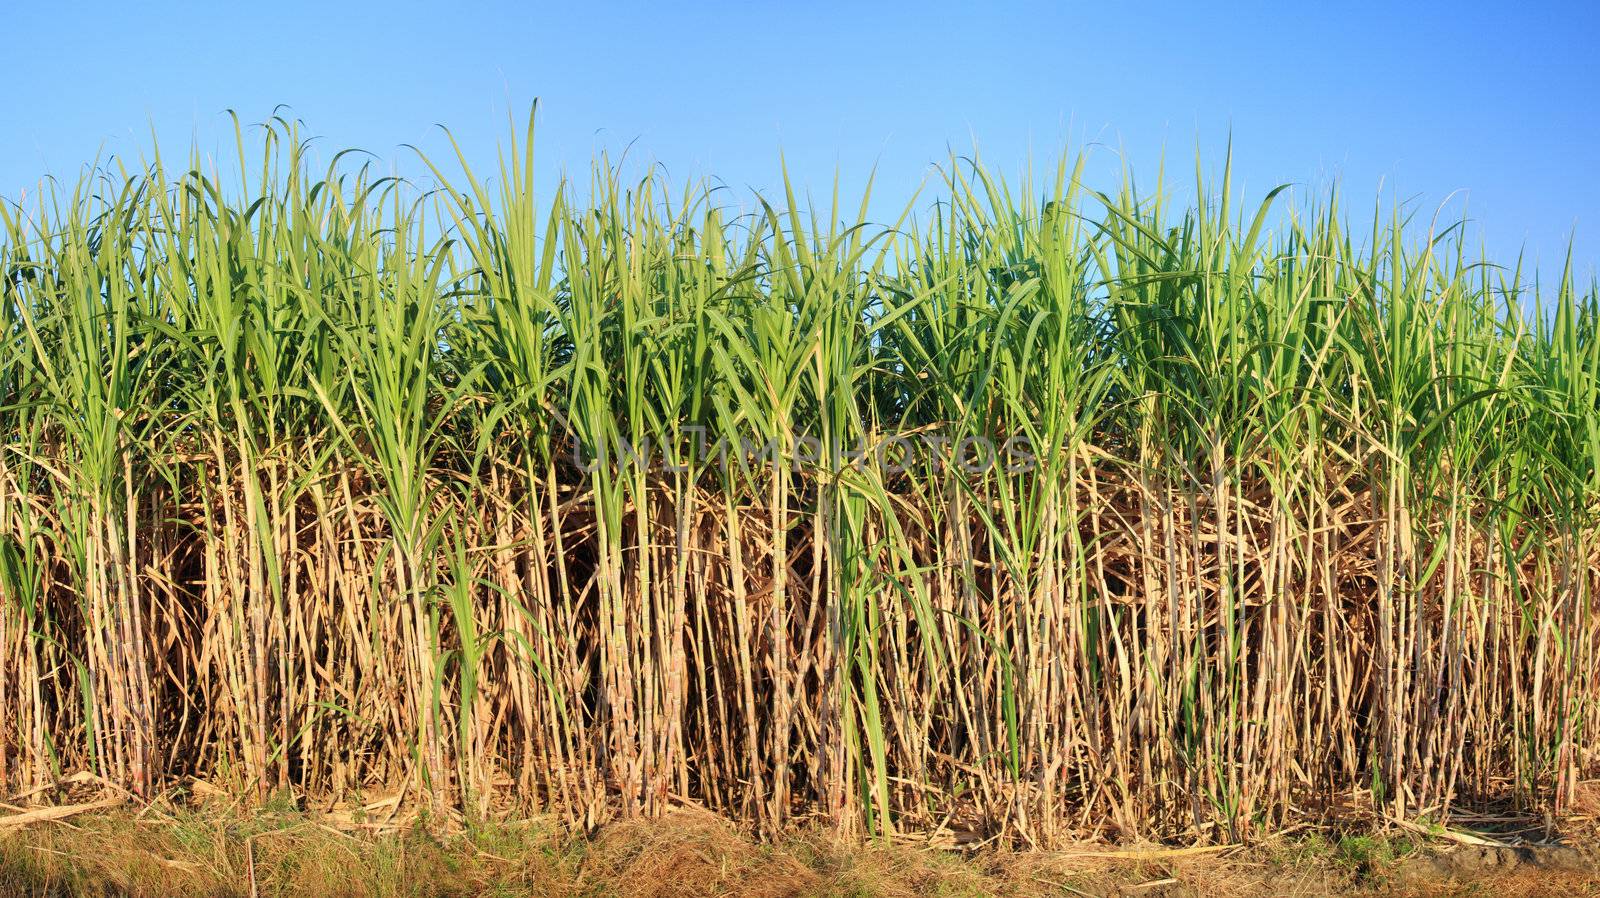 sugarcane plantation by photosoup